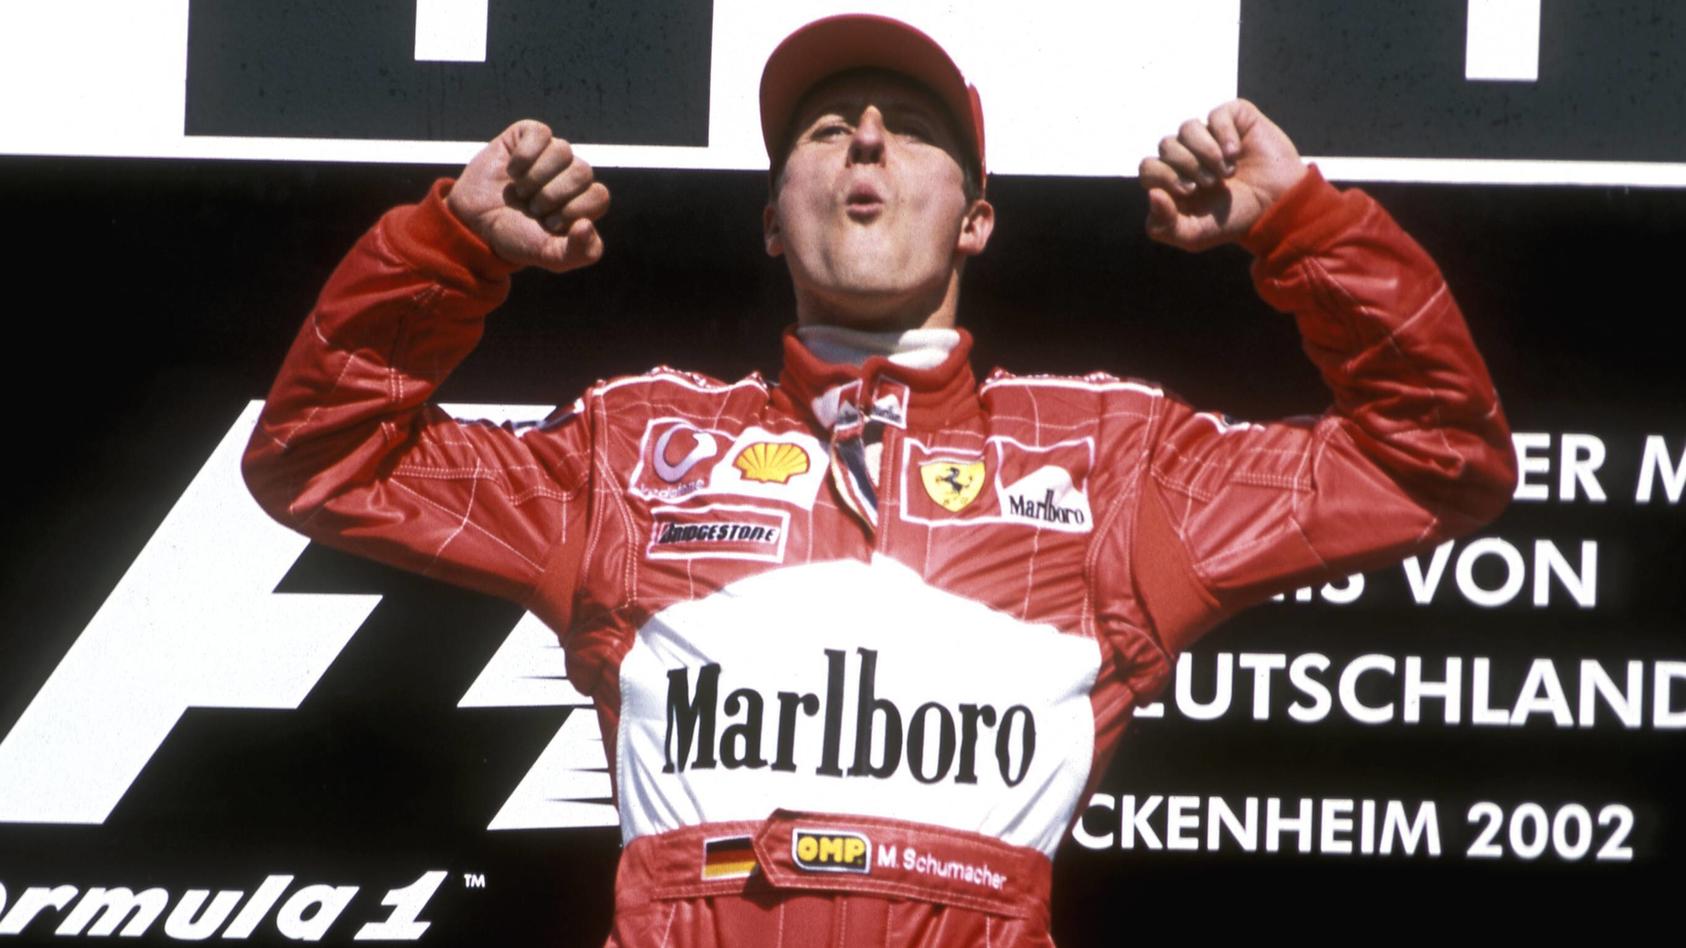  SCHUMACHER Michael Team F1 Scuderia Ferrari bei der Siegeehrung FIA Formel 1 Grosser Preis von Deutschland 2002 am 28. Juli 2002 in Hockenheim PUBLICATIONxINxGERxSUIxAUTxHUNxSWExNORxDENxFINxONLY